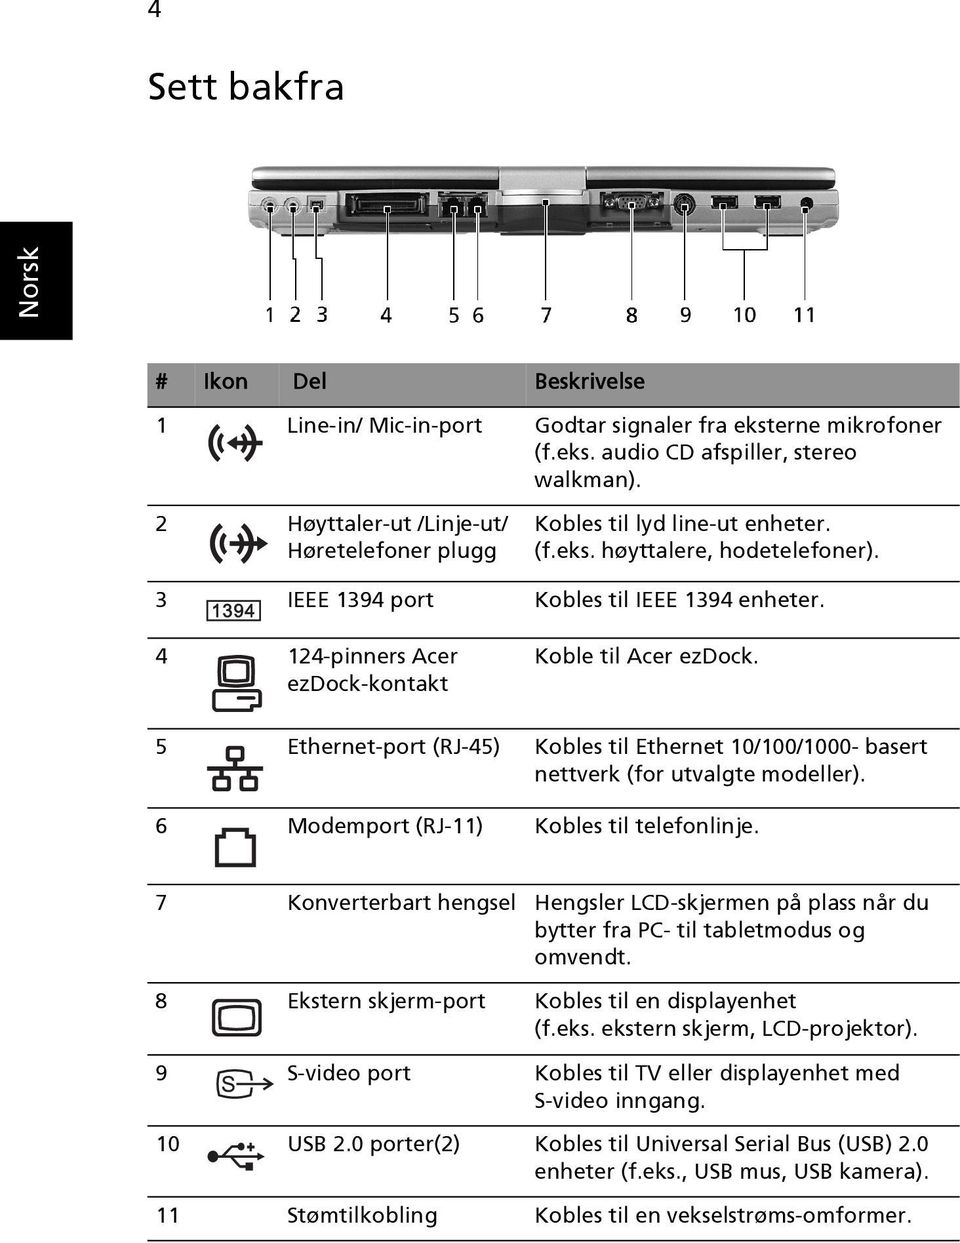 4 124-pinners Acer ezdock-kontakt Koble til Acer ezdock. 5 Ethernet-port (RJ-45) Kobles til Ethernet 10/100/1000- basert nettverk (for utvalgte modeller). 6 Modemport (RJ-11) Kobles til telefonlinje.